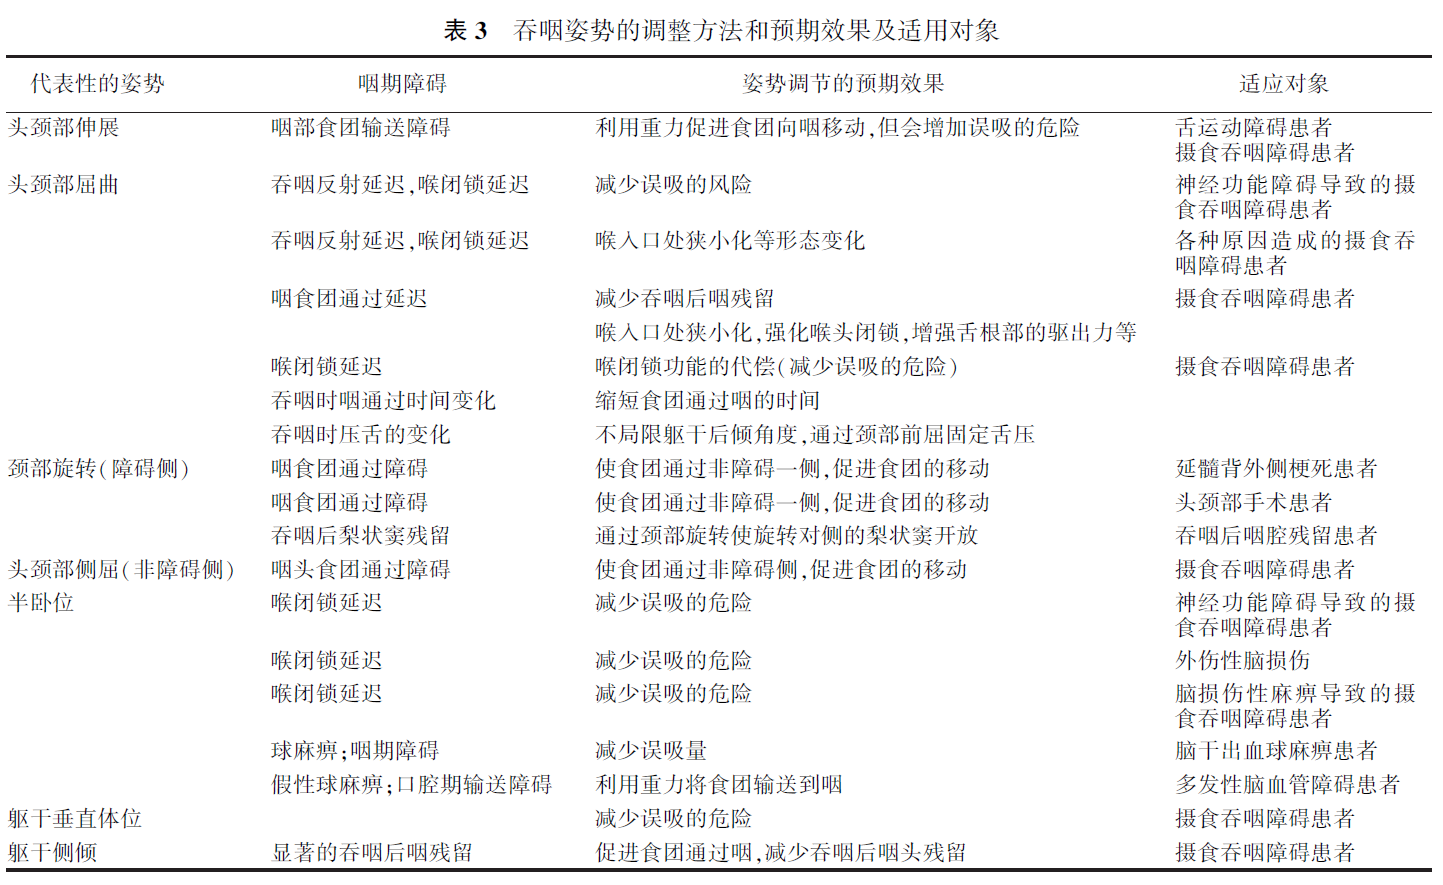 中国吞咽障碍评估与治疗专家共识(2017年版)